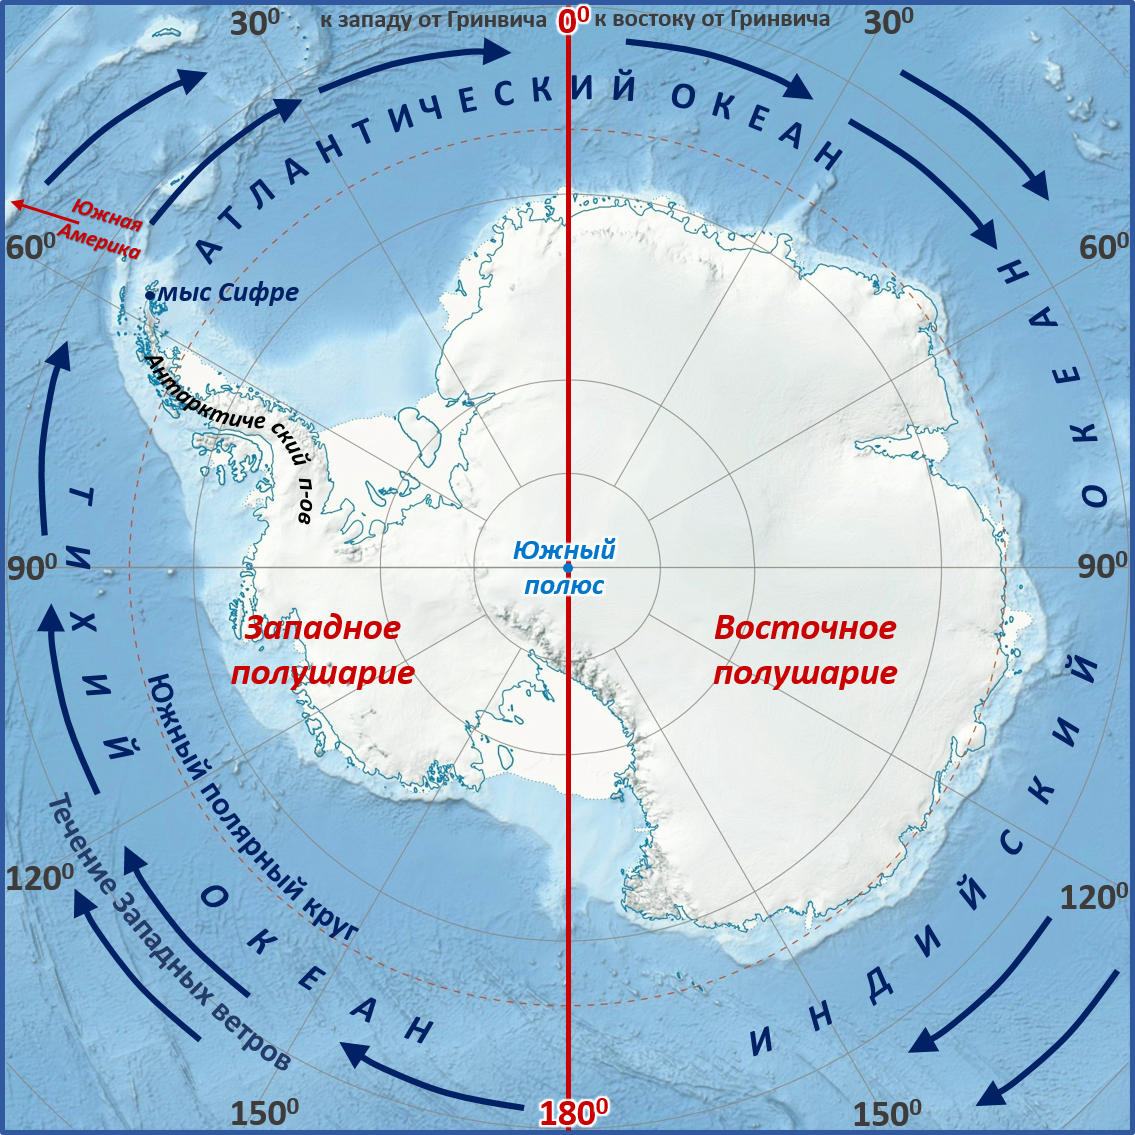 Море южного полушария. Мыс Сифре на карте Антарктиды. Моря: Амундсена, Беллинсгаузена, Росса, Уэдделла.. Мыс Сифре Антарктида. Южный полюс на карте Антарктиды.